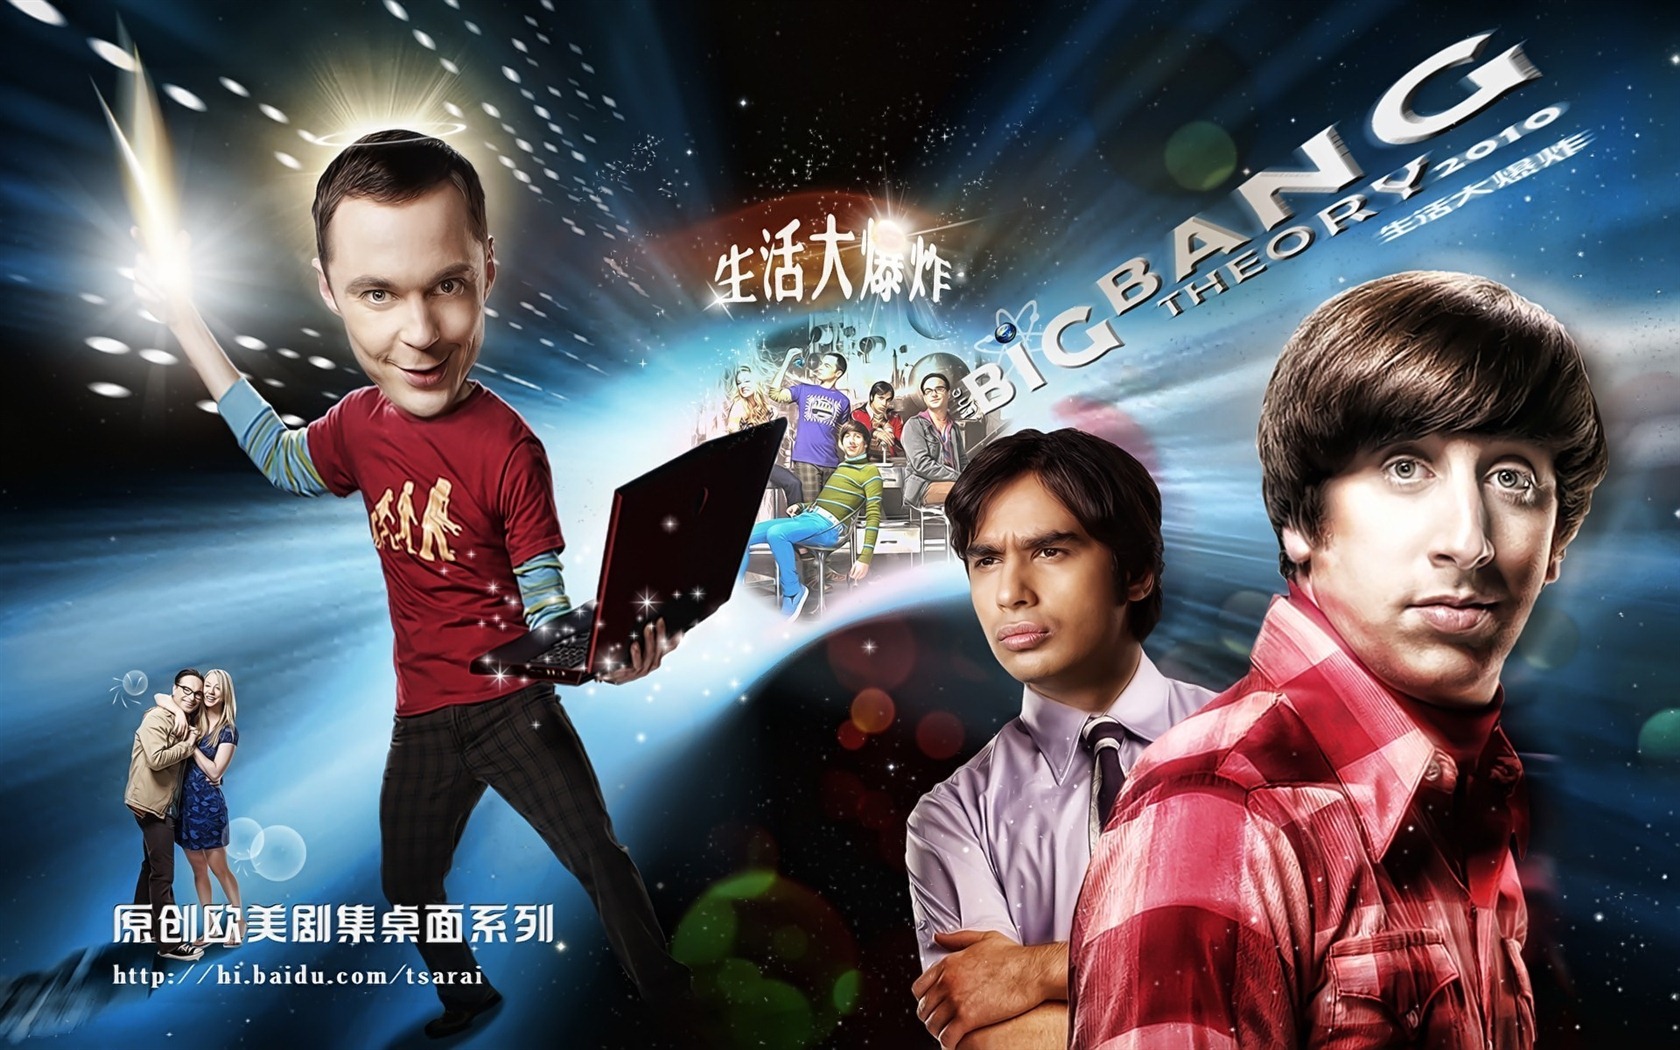 The Big Bang Theory 生活大爆炸 电视剧高清壁纸27 - 1680x1050